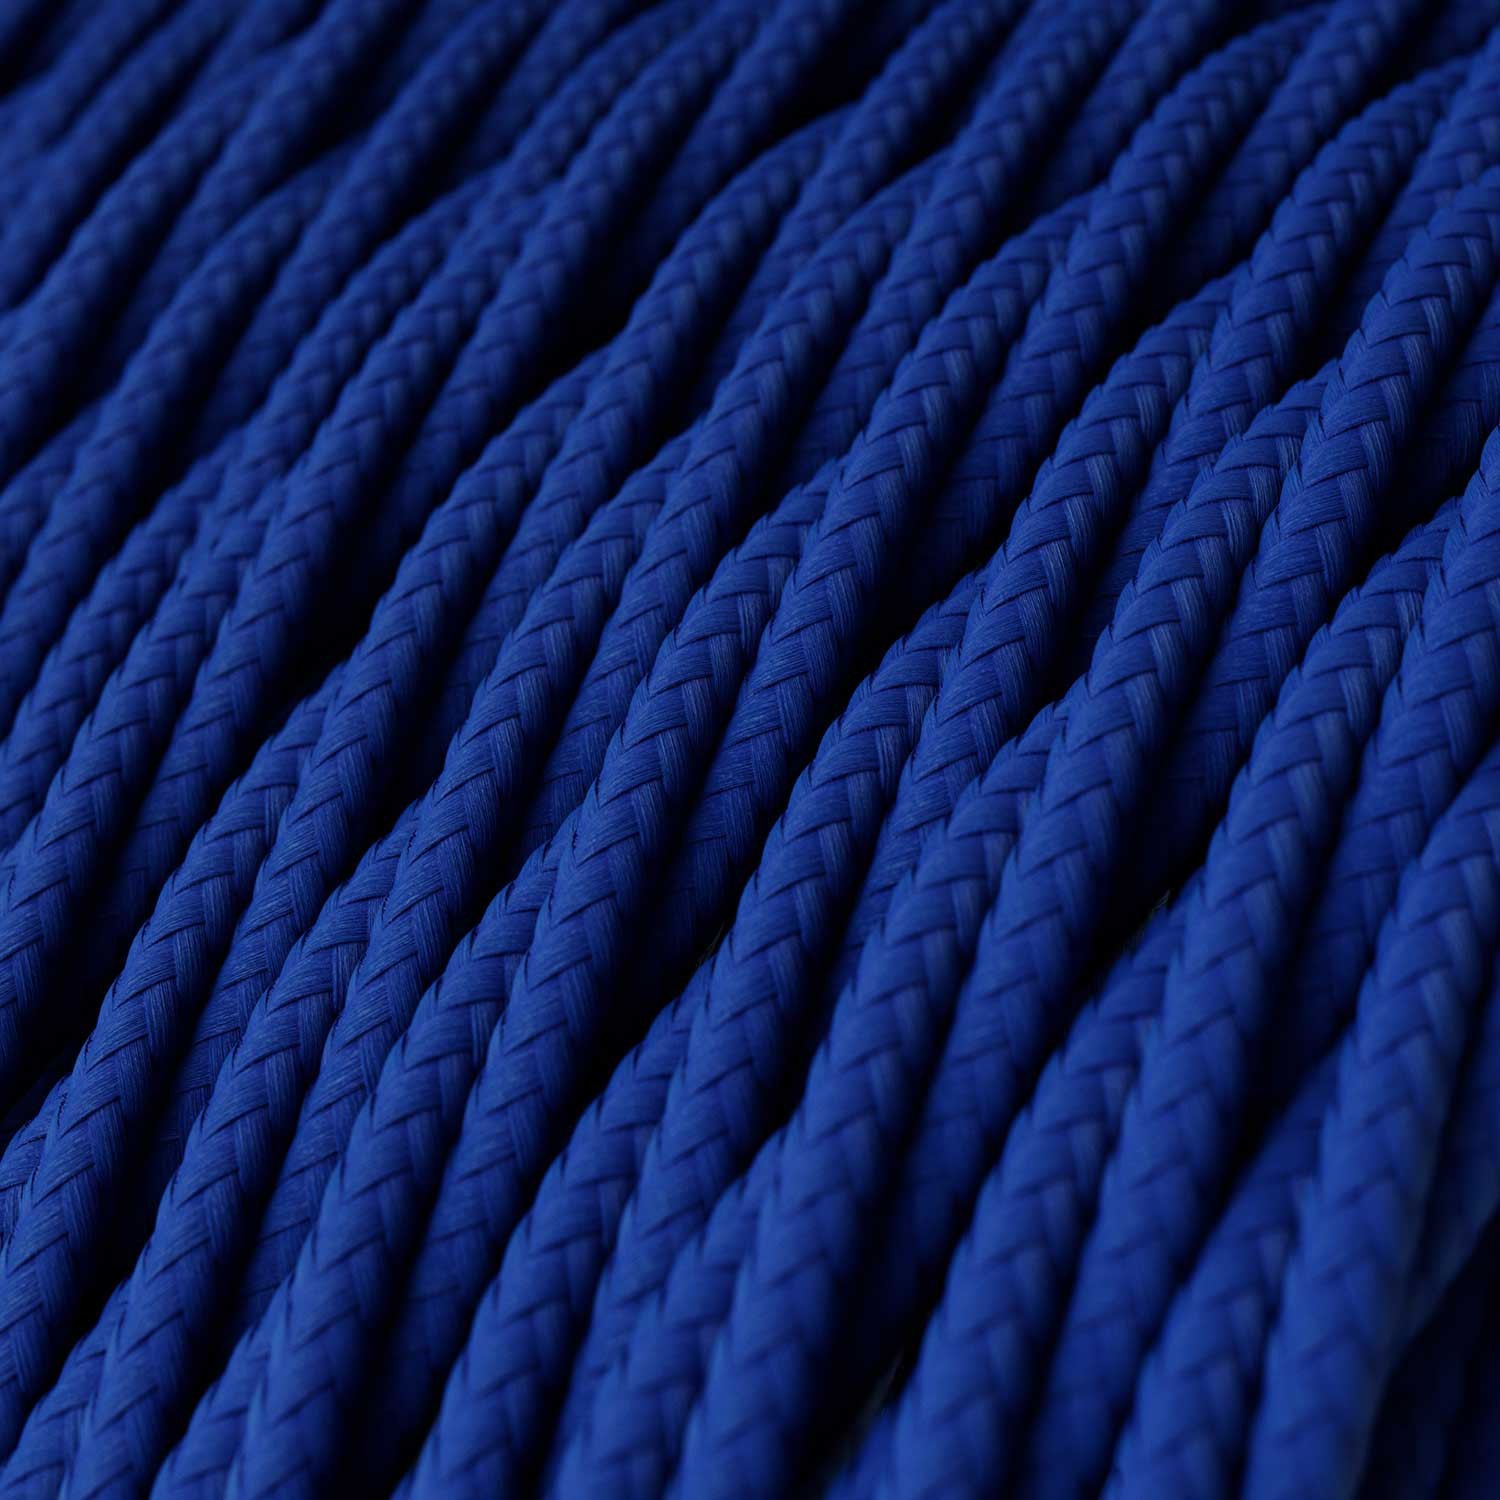 Cable Eléctrico Trenzado Recubierto en tejido Efecto Seda Color Sólido, Azul TM12